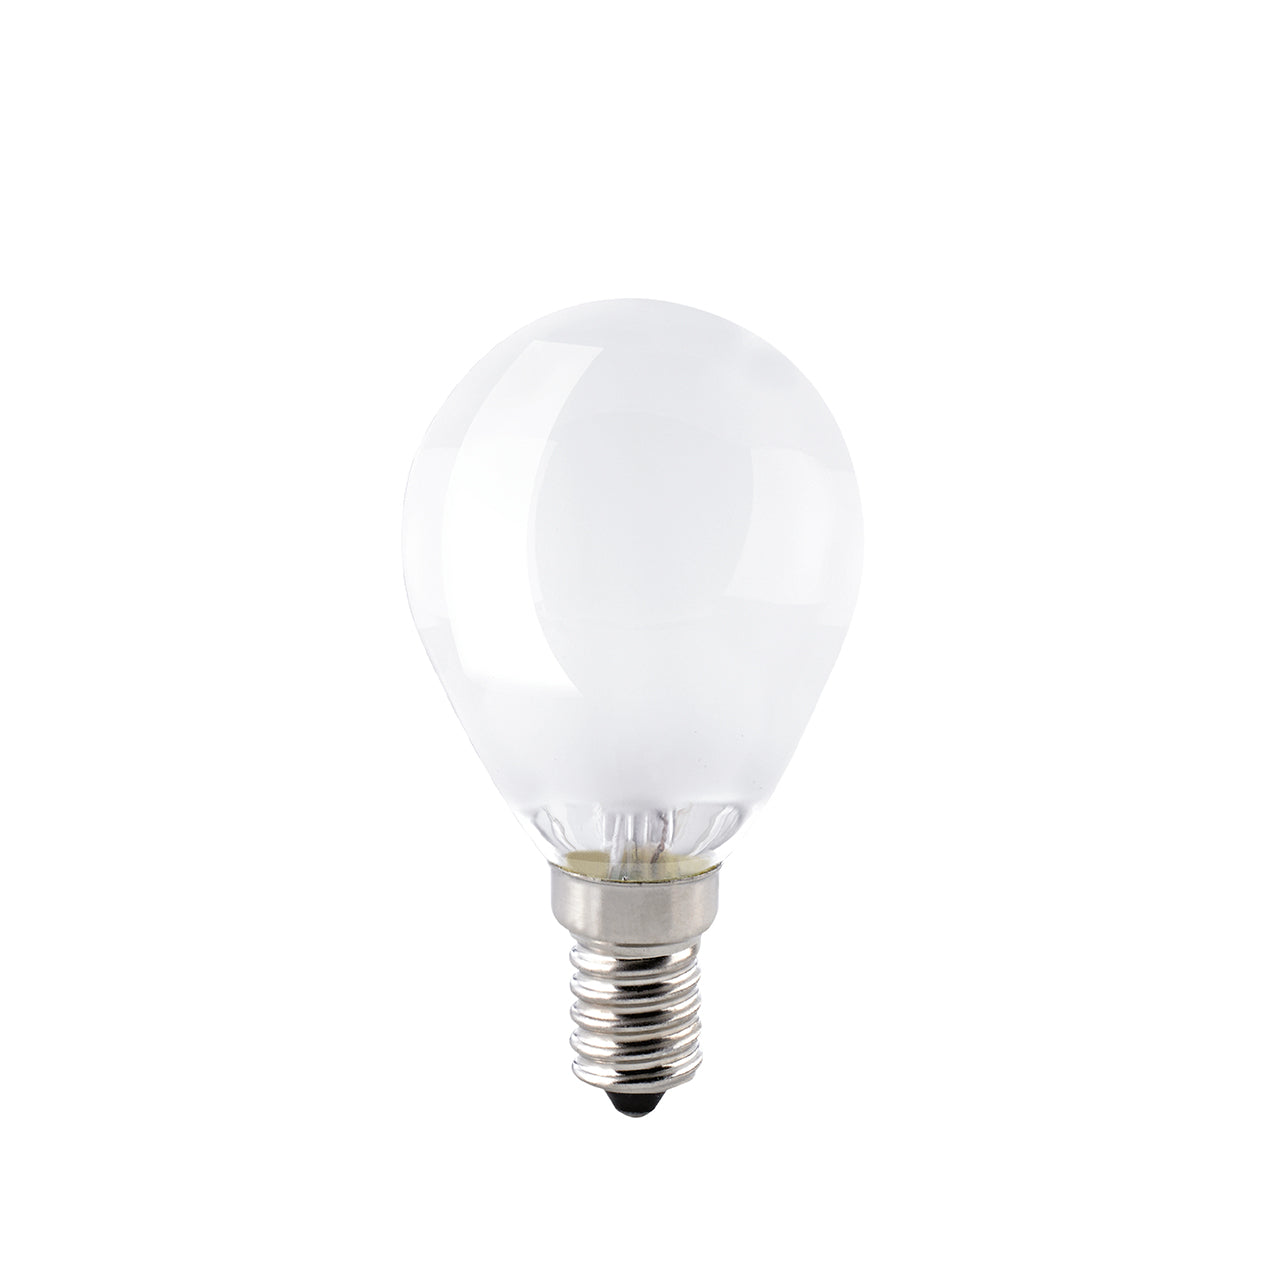 Light bulb E14 630 lm